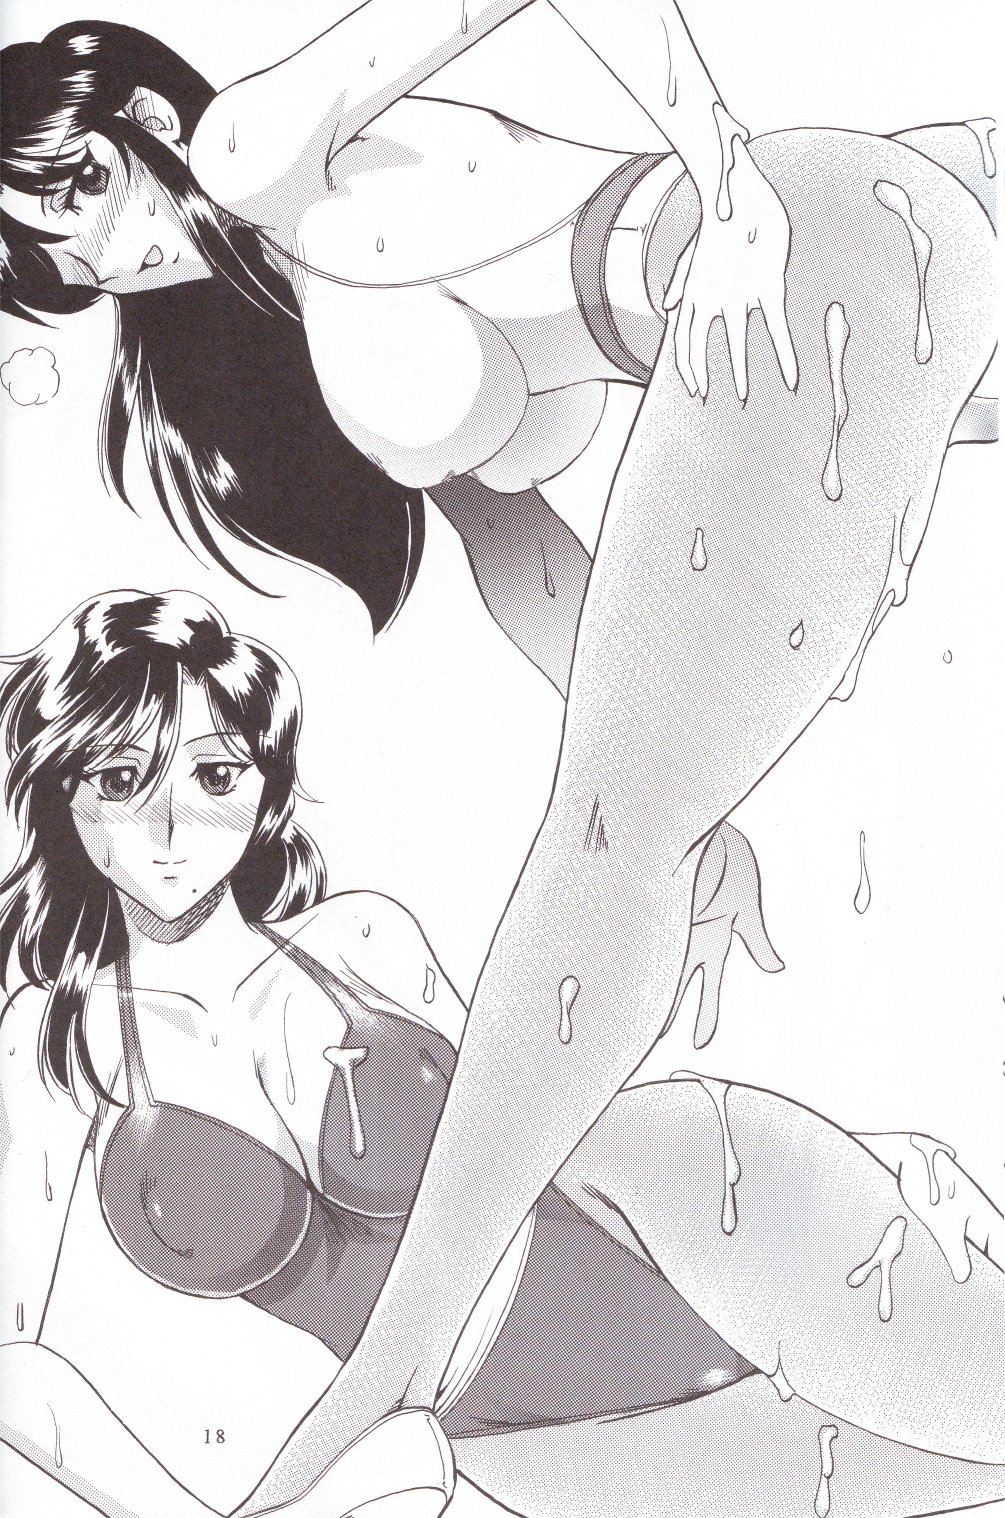 [SEMEDAIN G (Mizutani Mint, Mokkouyou Bond)] SEMEDAIN G WORKS vol.24 - Shuukan Shounen Jump Hon 4 (Bleach, One Piece) page 17 full